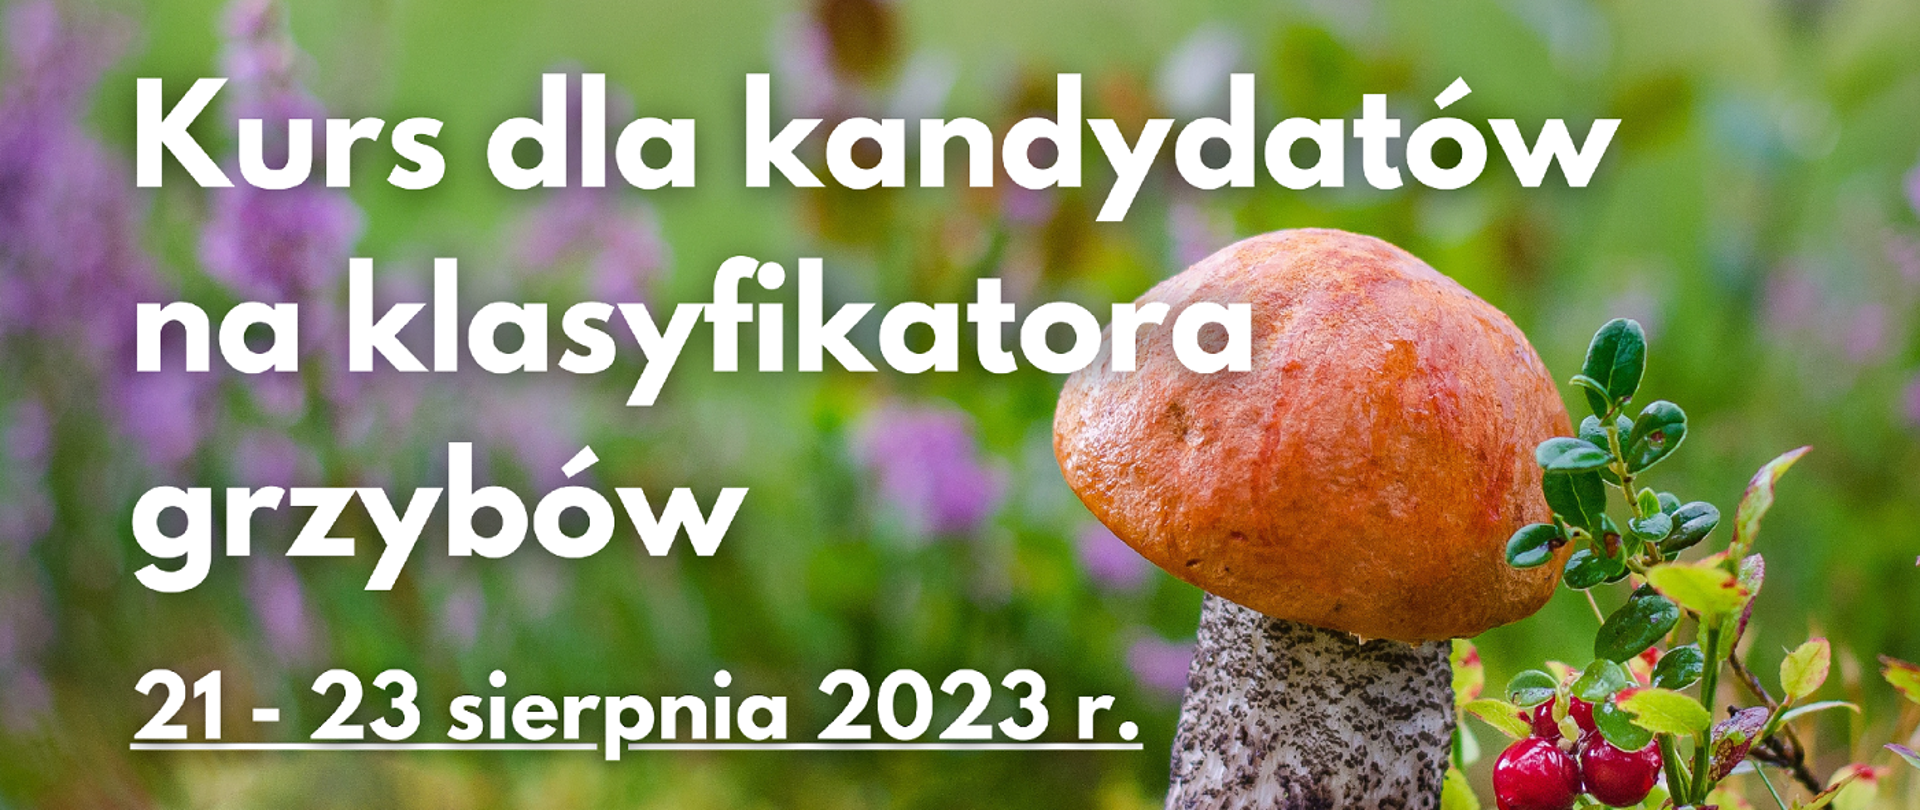 Baner ze zdjęciem na pierwszym planie po lewej grzyb, zielone tło, po prawej biały napis: "Kurs dla kandydatów na klasyfikatorów grzybów świeżych 21 - 23 sierpnia 2023 r."